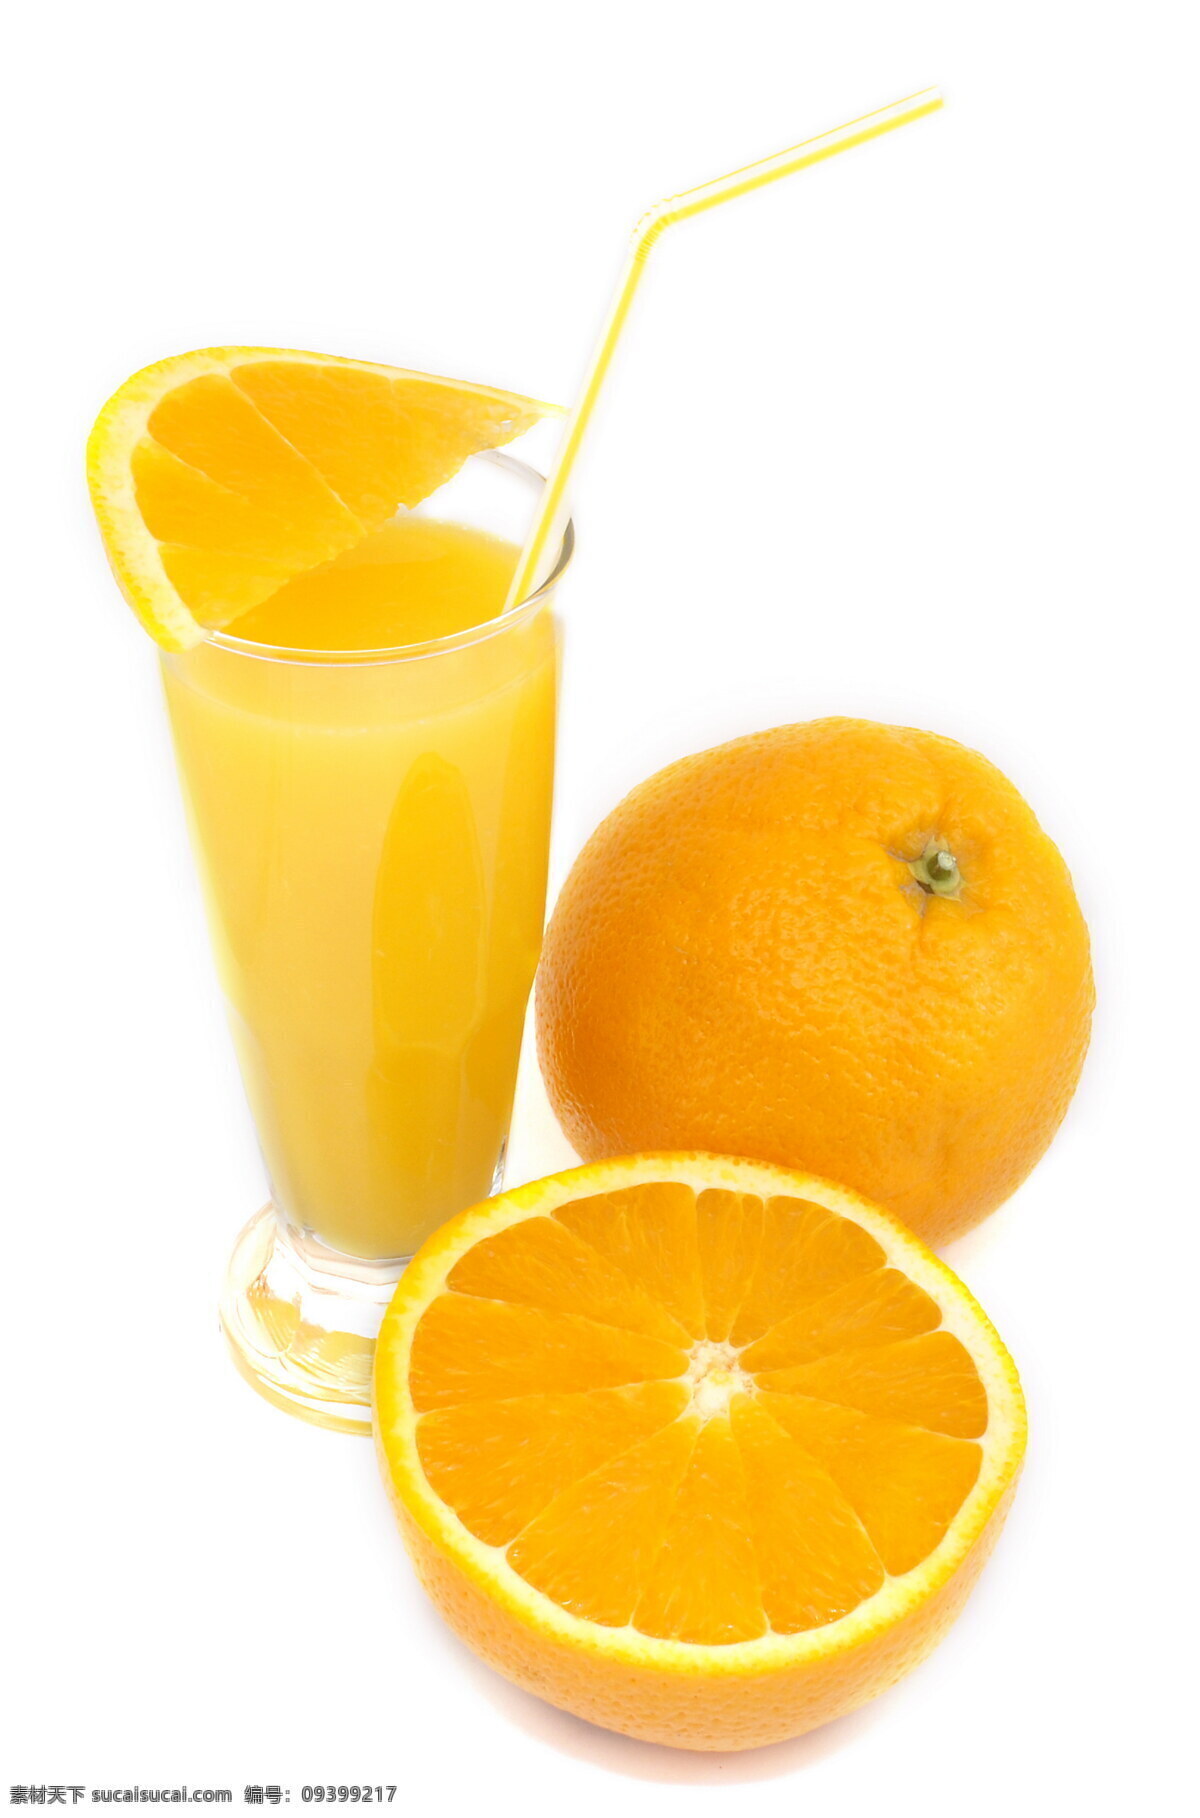 橙子 一杯 橙汁 水果 一个半橙子 切开的橙子 橙子片 杯子 玻璃杯 一杯橙汁 清凉 可口 果汁 吸管 水果图片 果汁图片 高清图片 蔬菜图片 餐饮美食